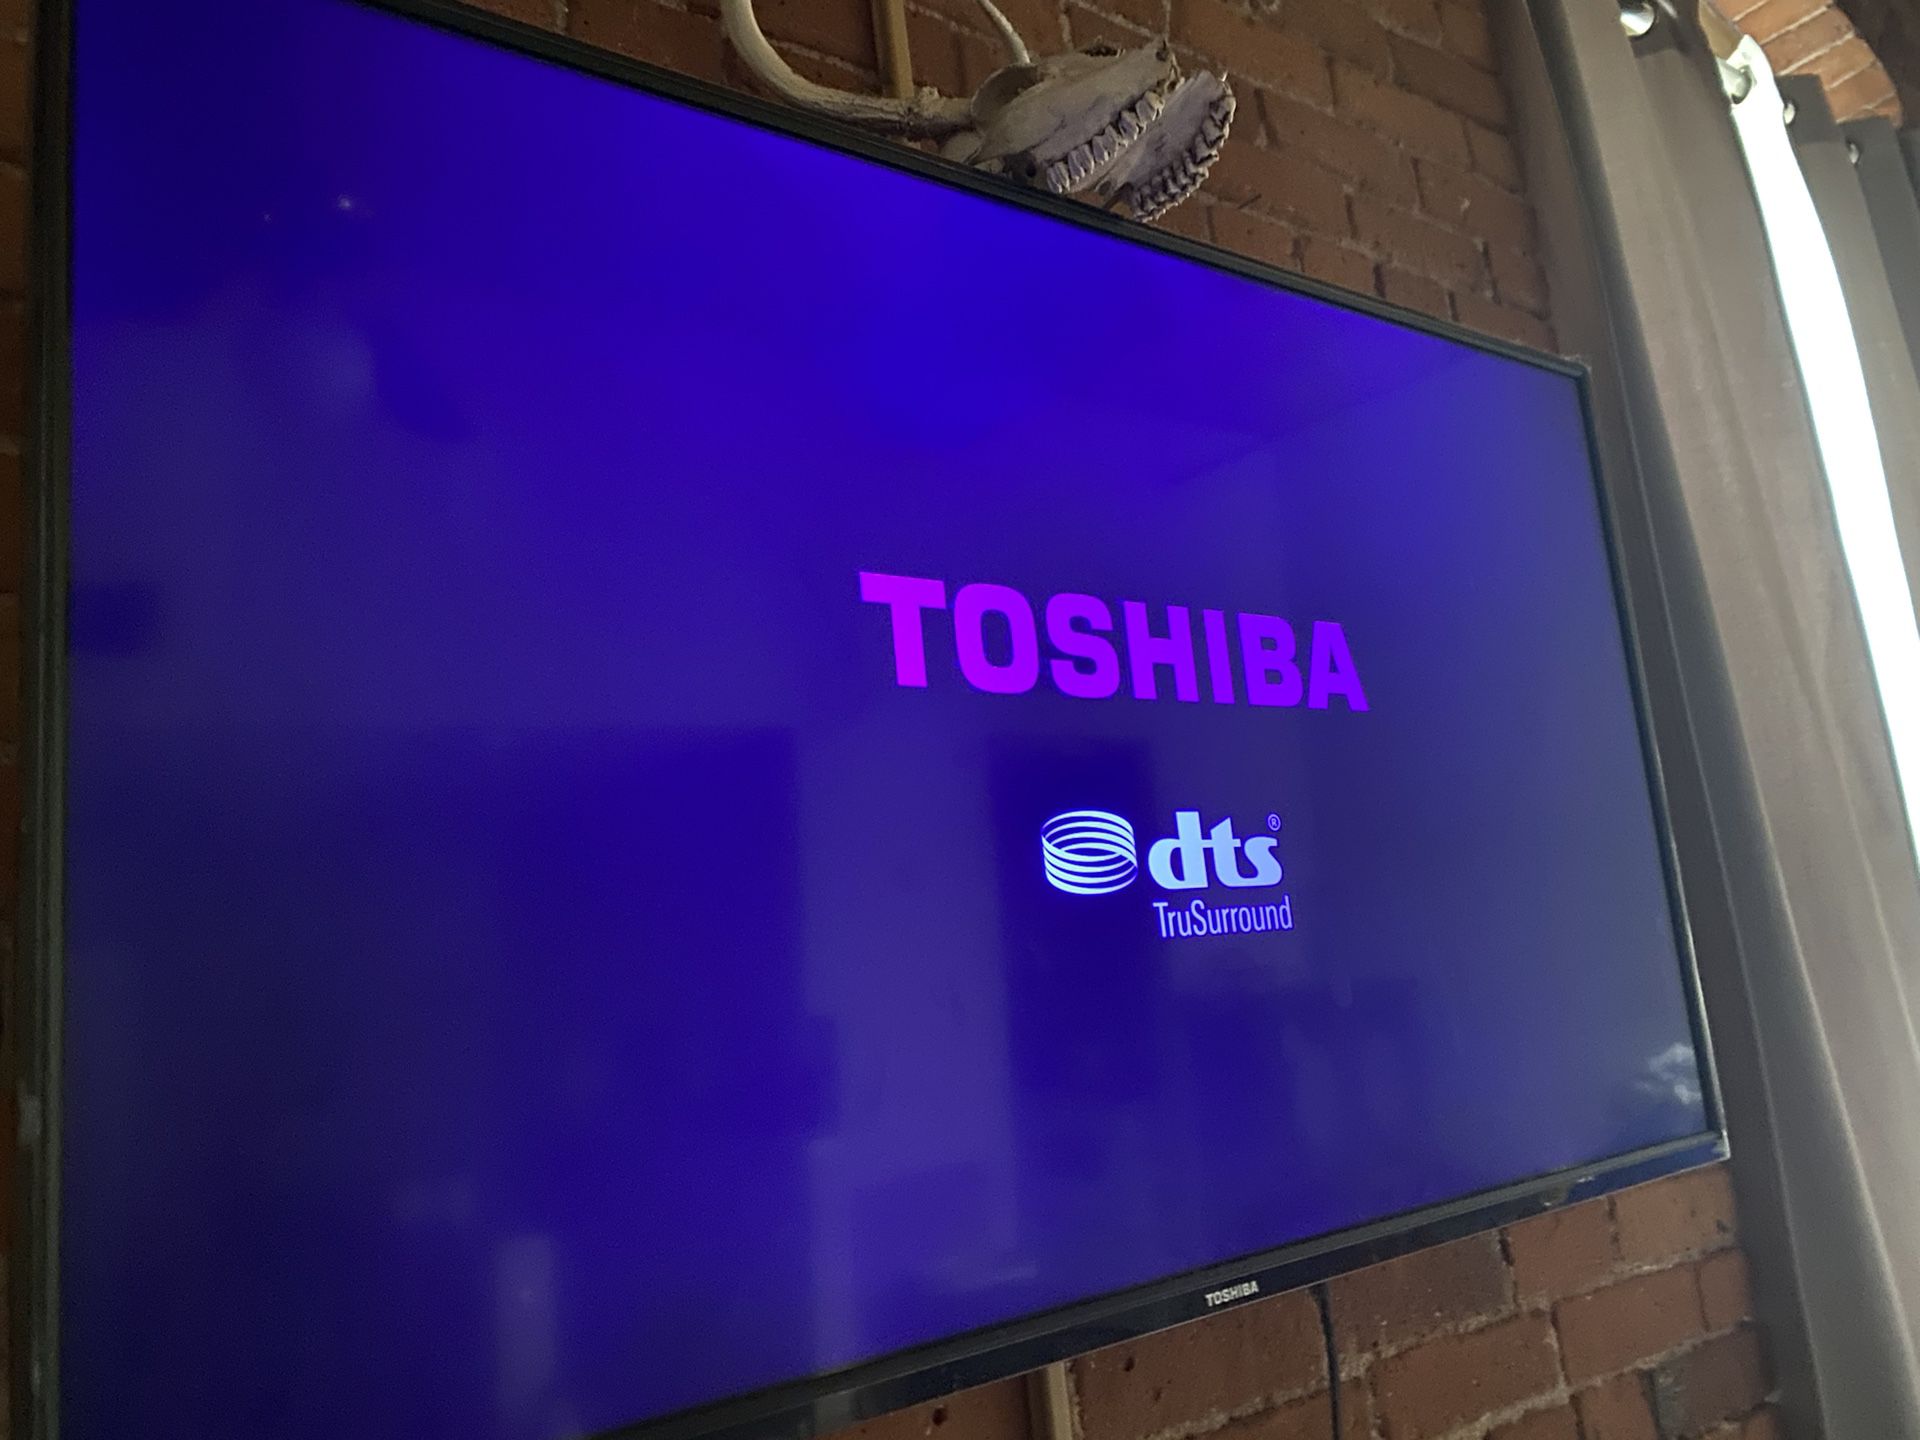 Toshiba Flatscreen TV